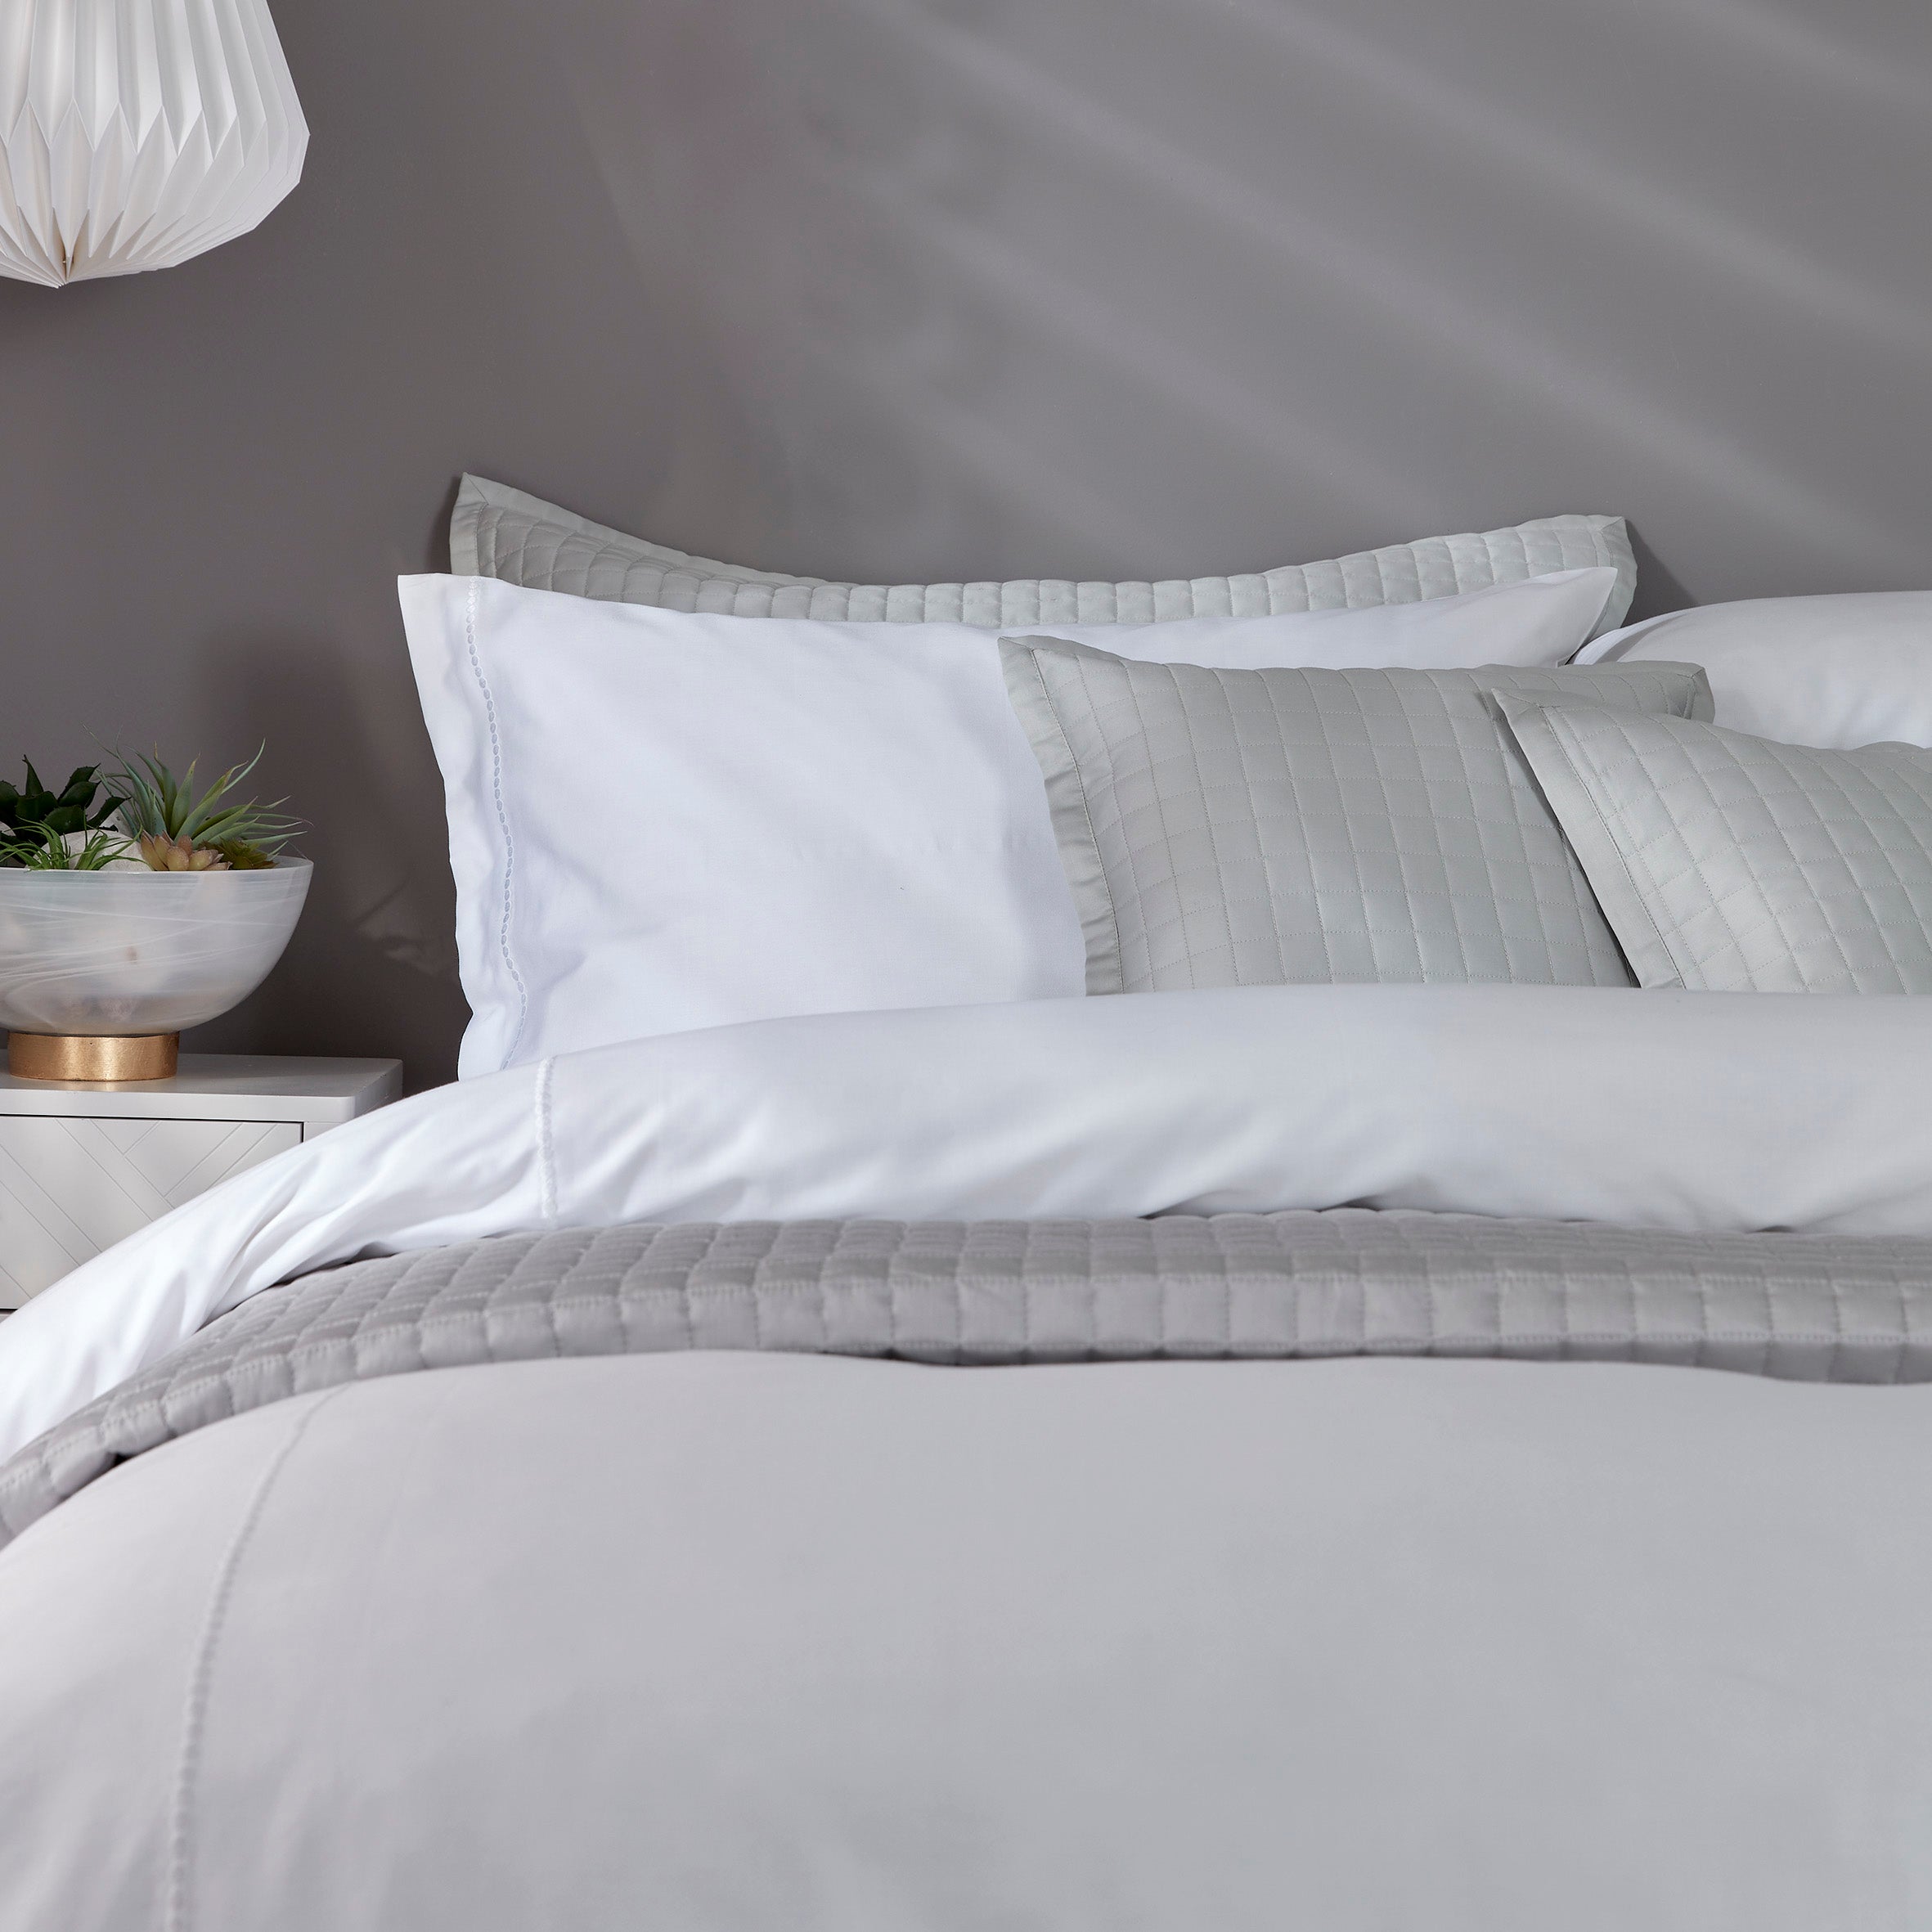 Three Easy Pillow Arrangements: Queen & King Beds  Bed pillow arrangement,  Bedroom pillows arrangement, King bed pillows arrangement